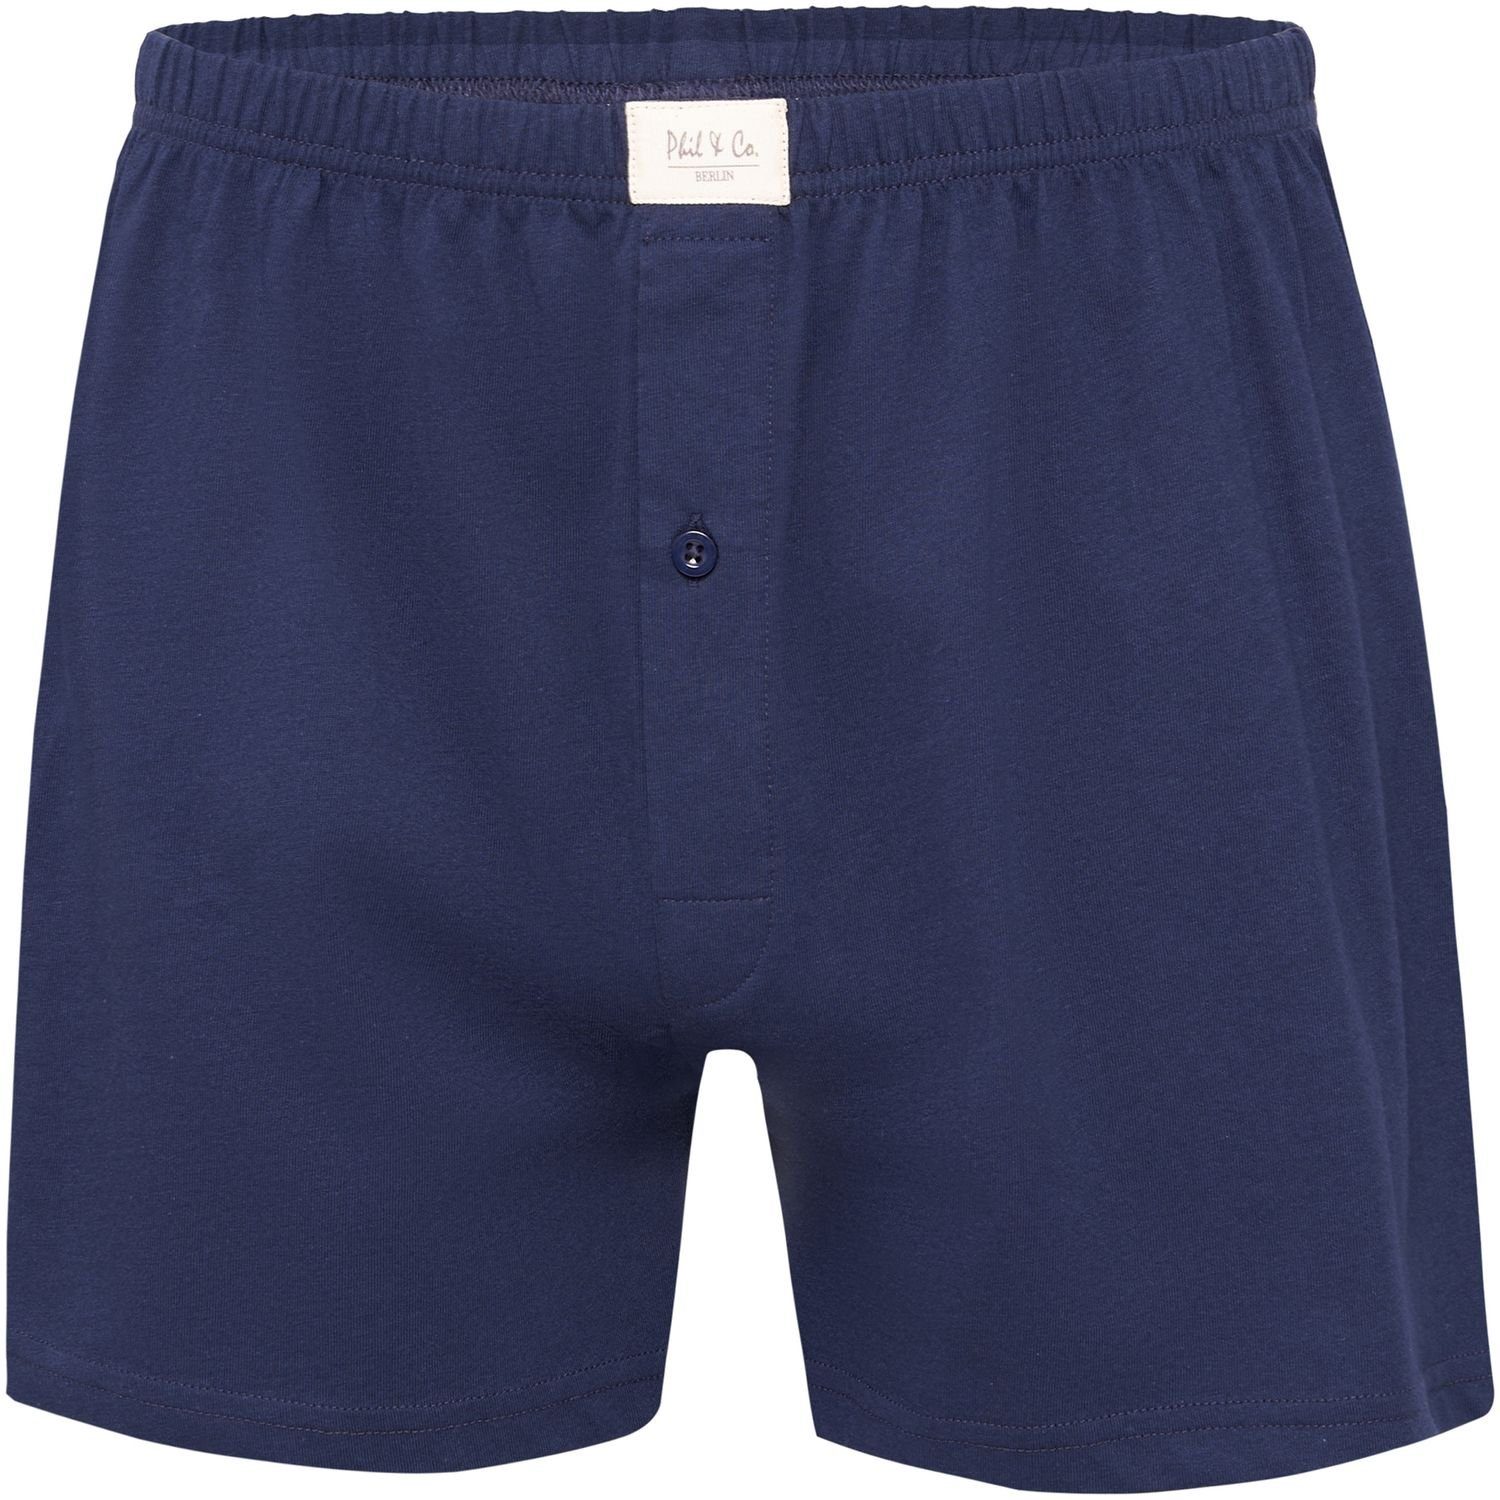 & Boxershorts Phil Jersey M oder marine Herren Boxershorts Unterhosen Phil & Co. 9 - Größen (9-St) 5XL Shorts schwarz Pant Co große Stück blau